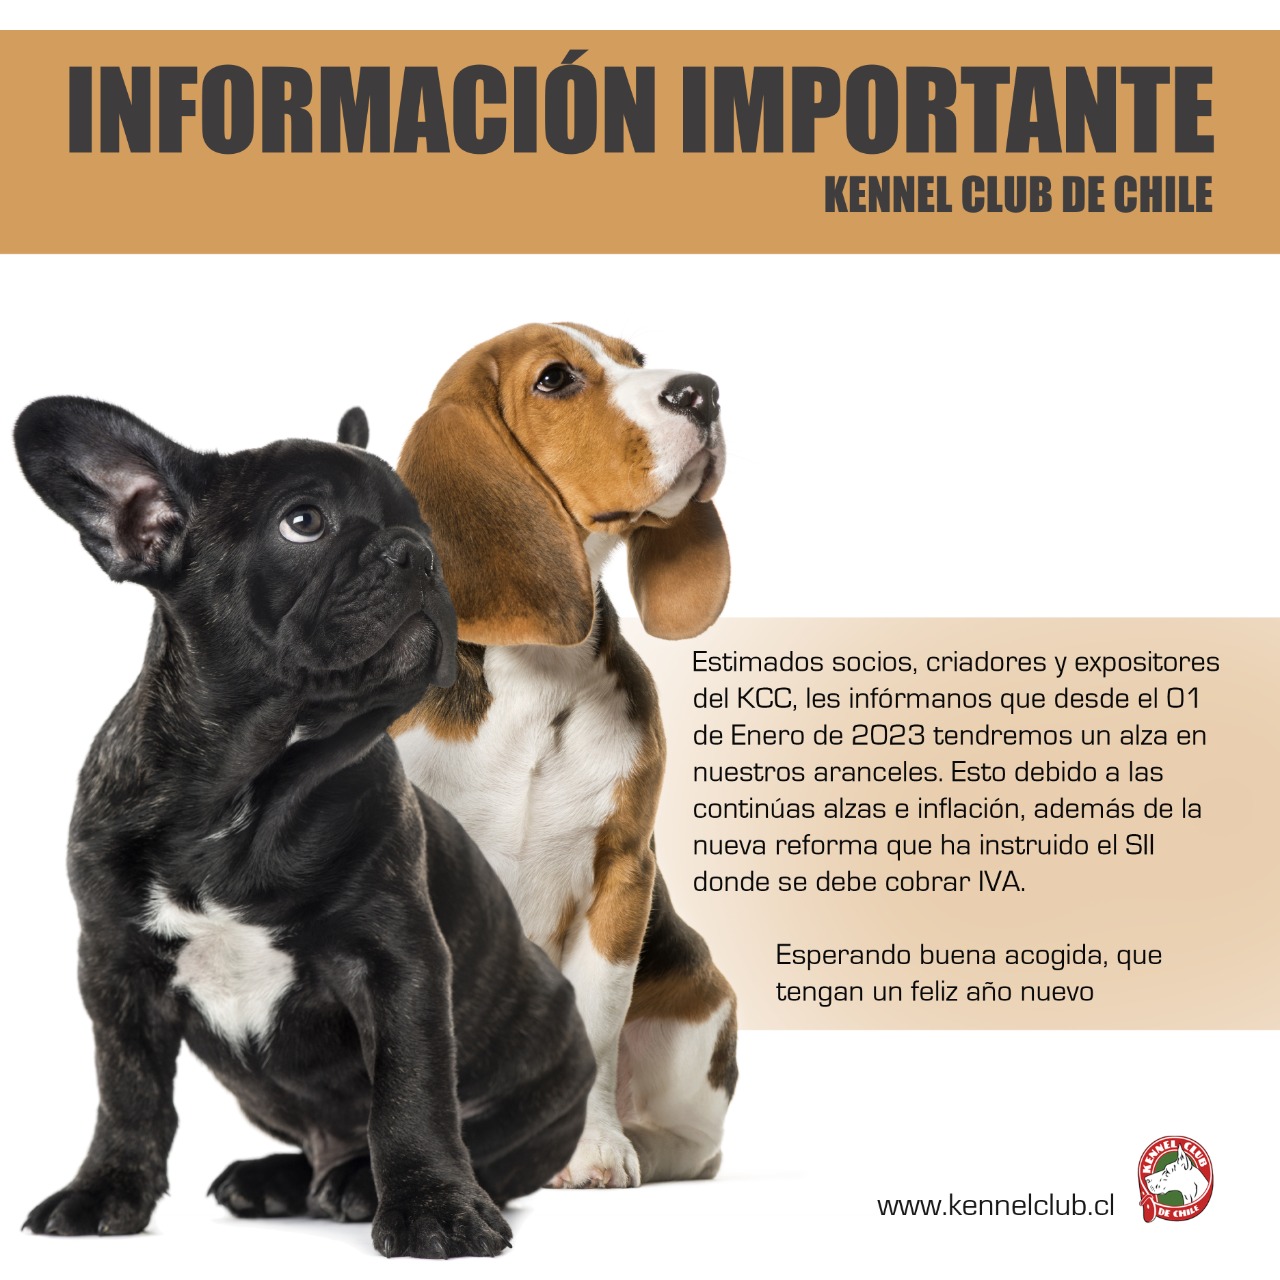 INFORMACION IMPORTANTE, KENNEL CLUB DE CHILE.